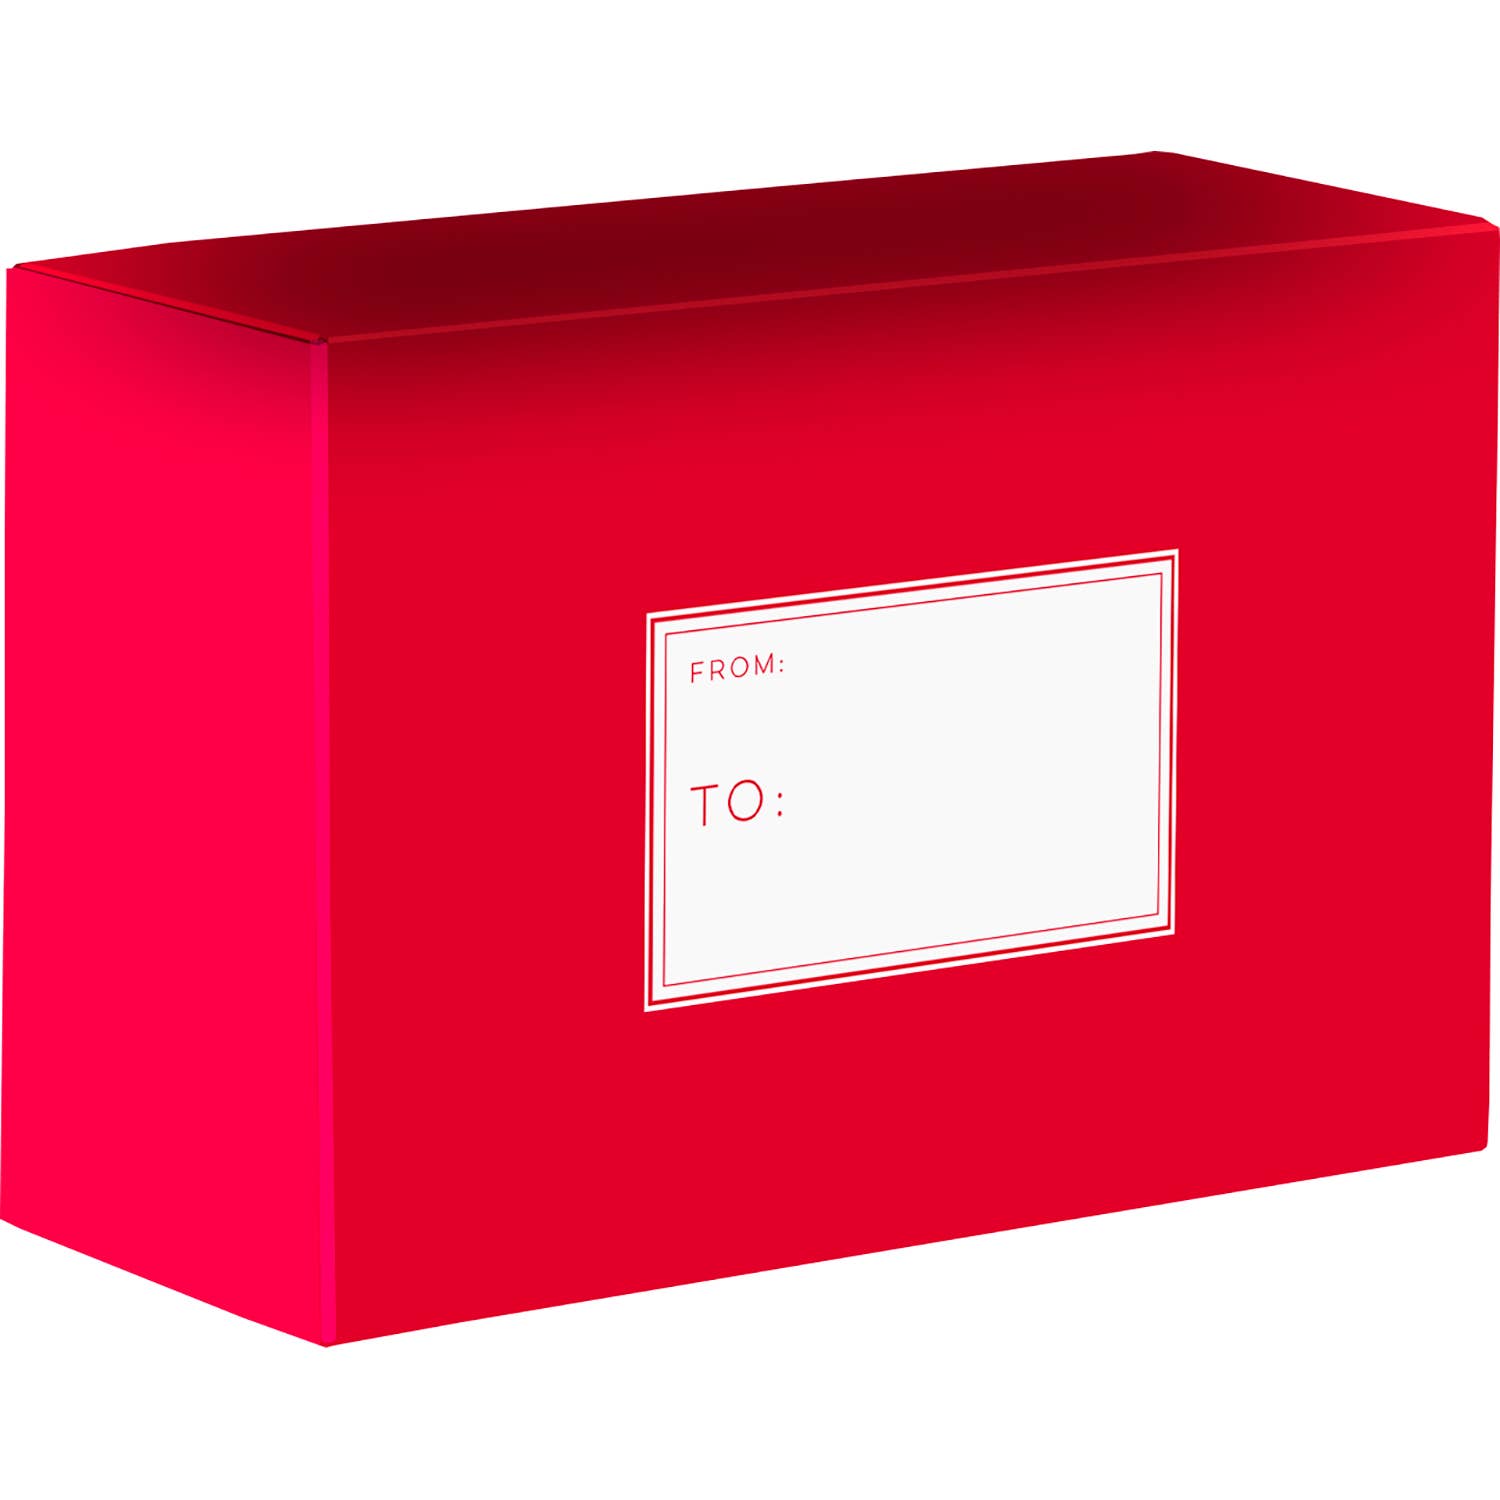 Red Mailing Box (Medium)